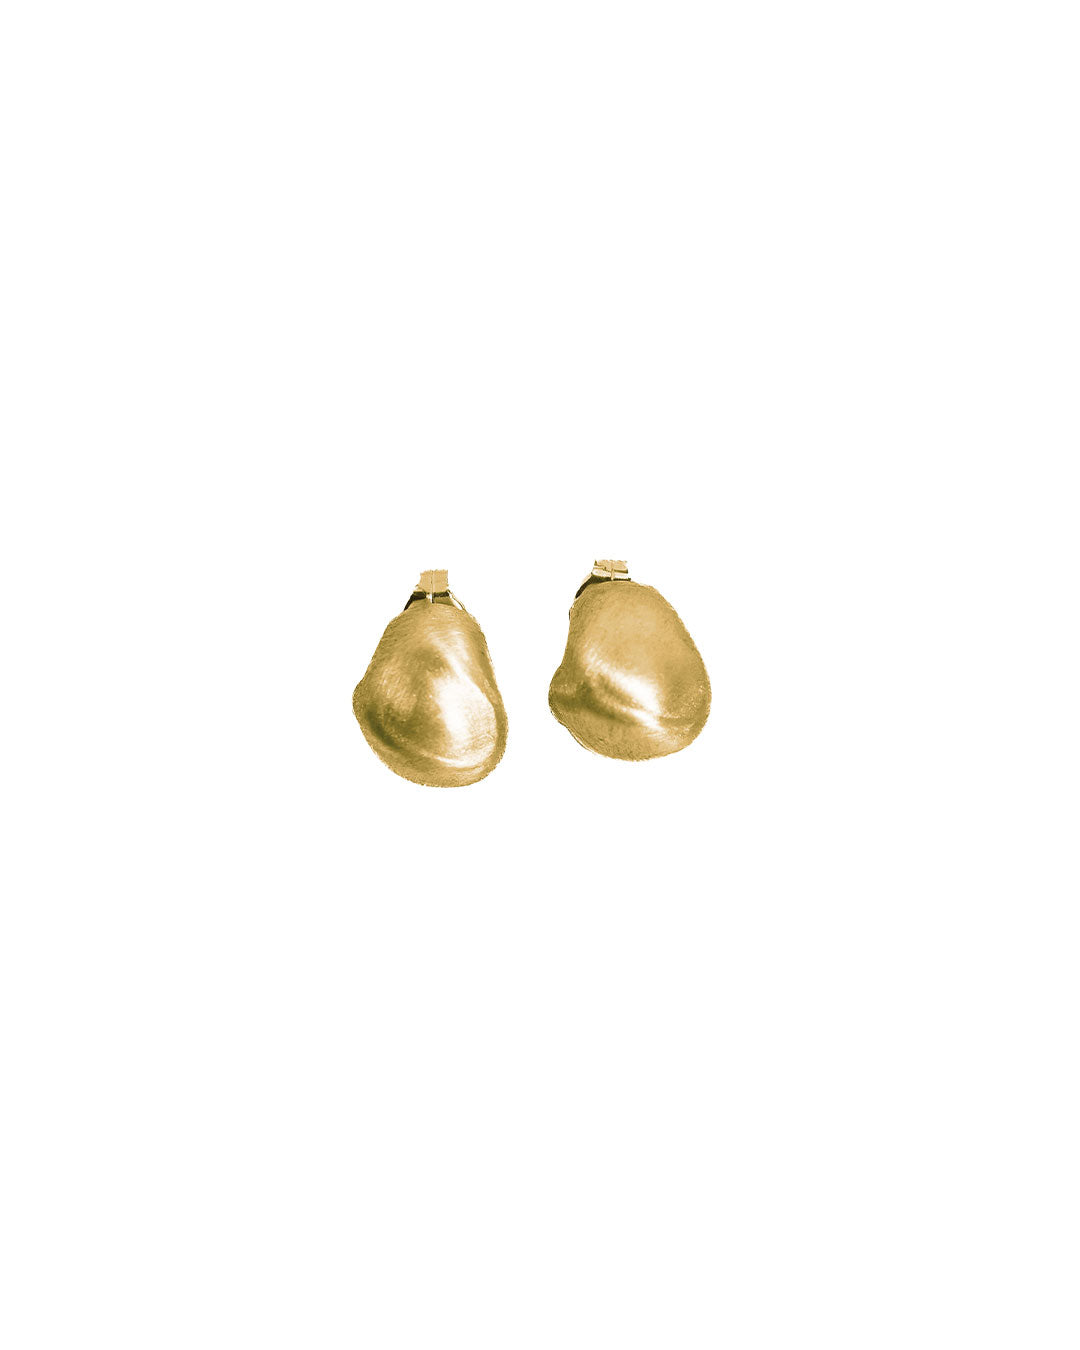 Mendes earrings